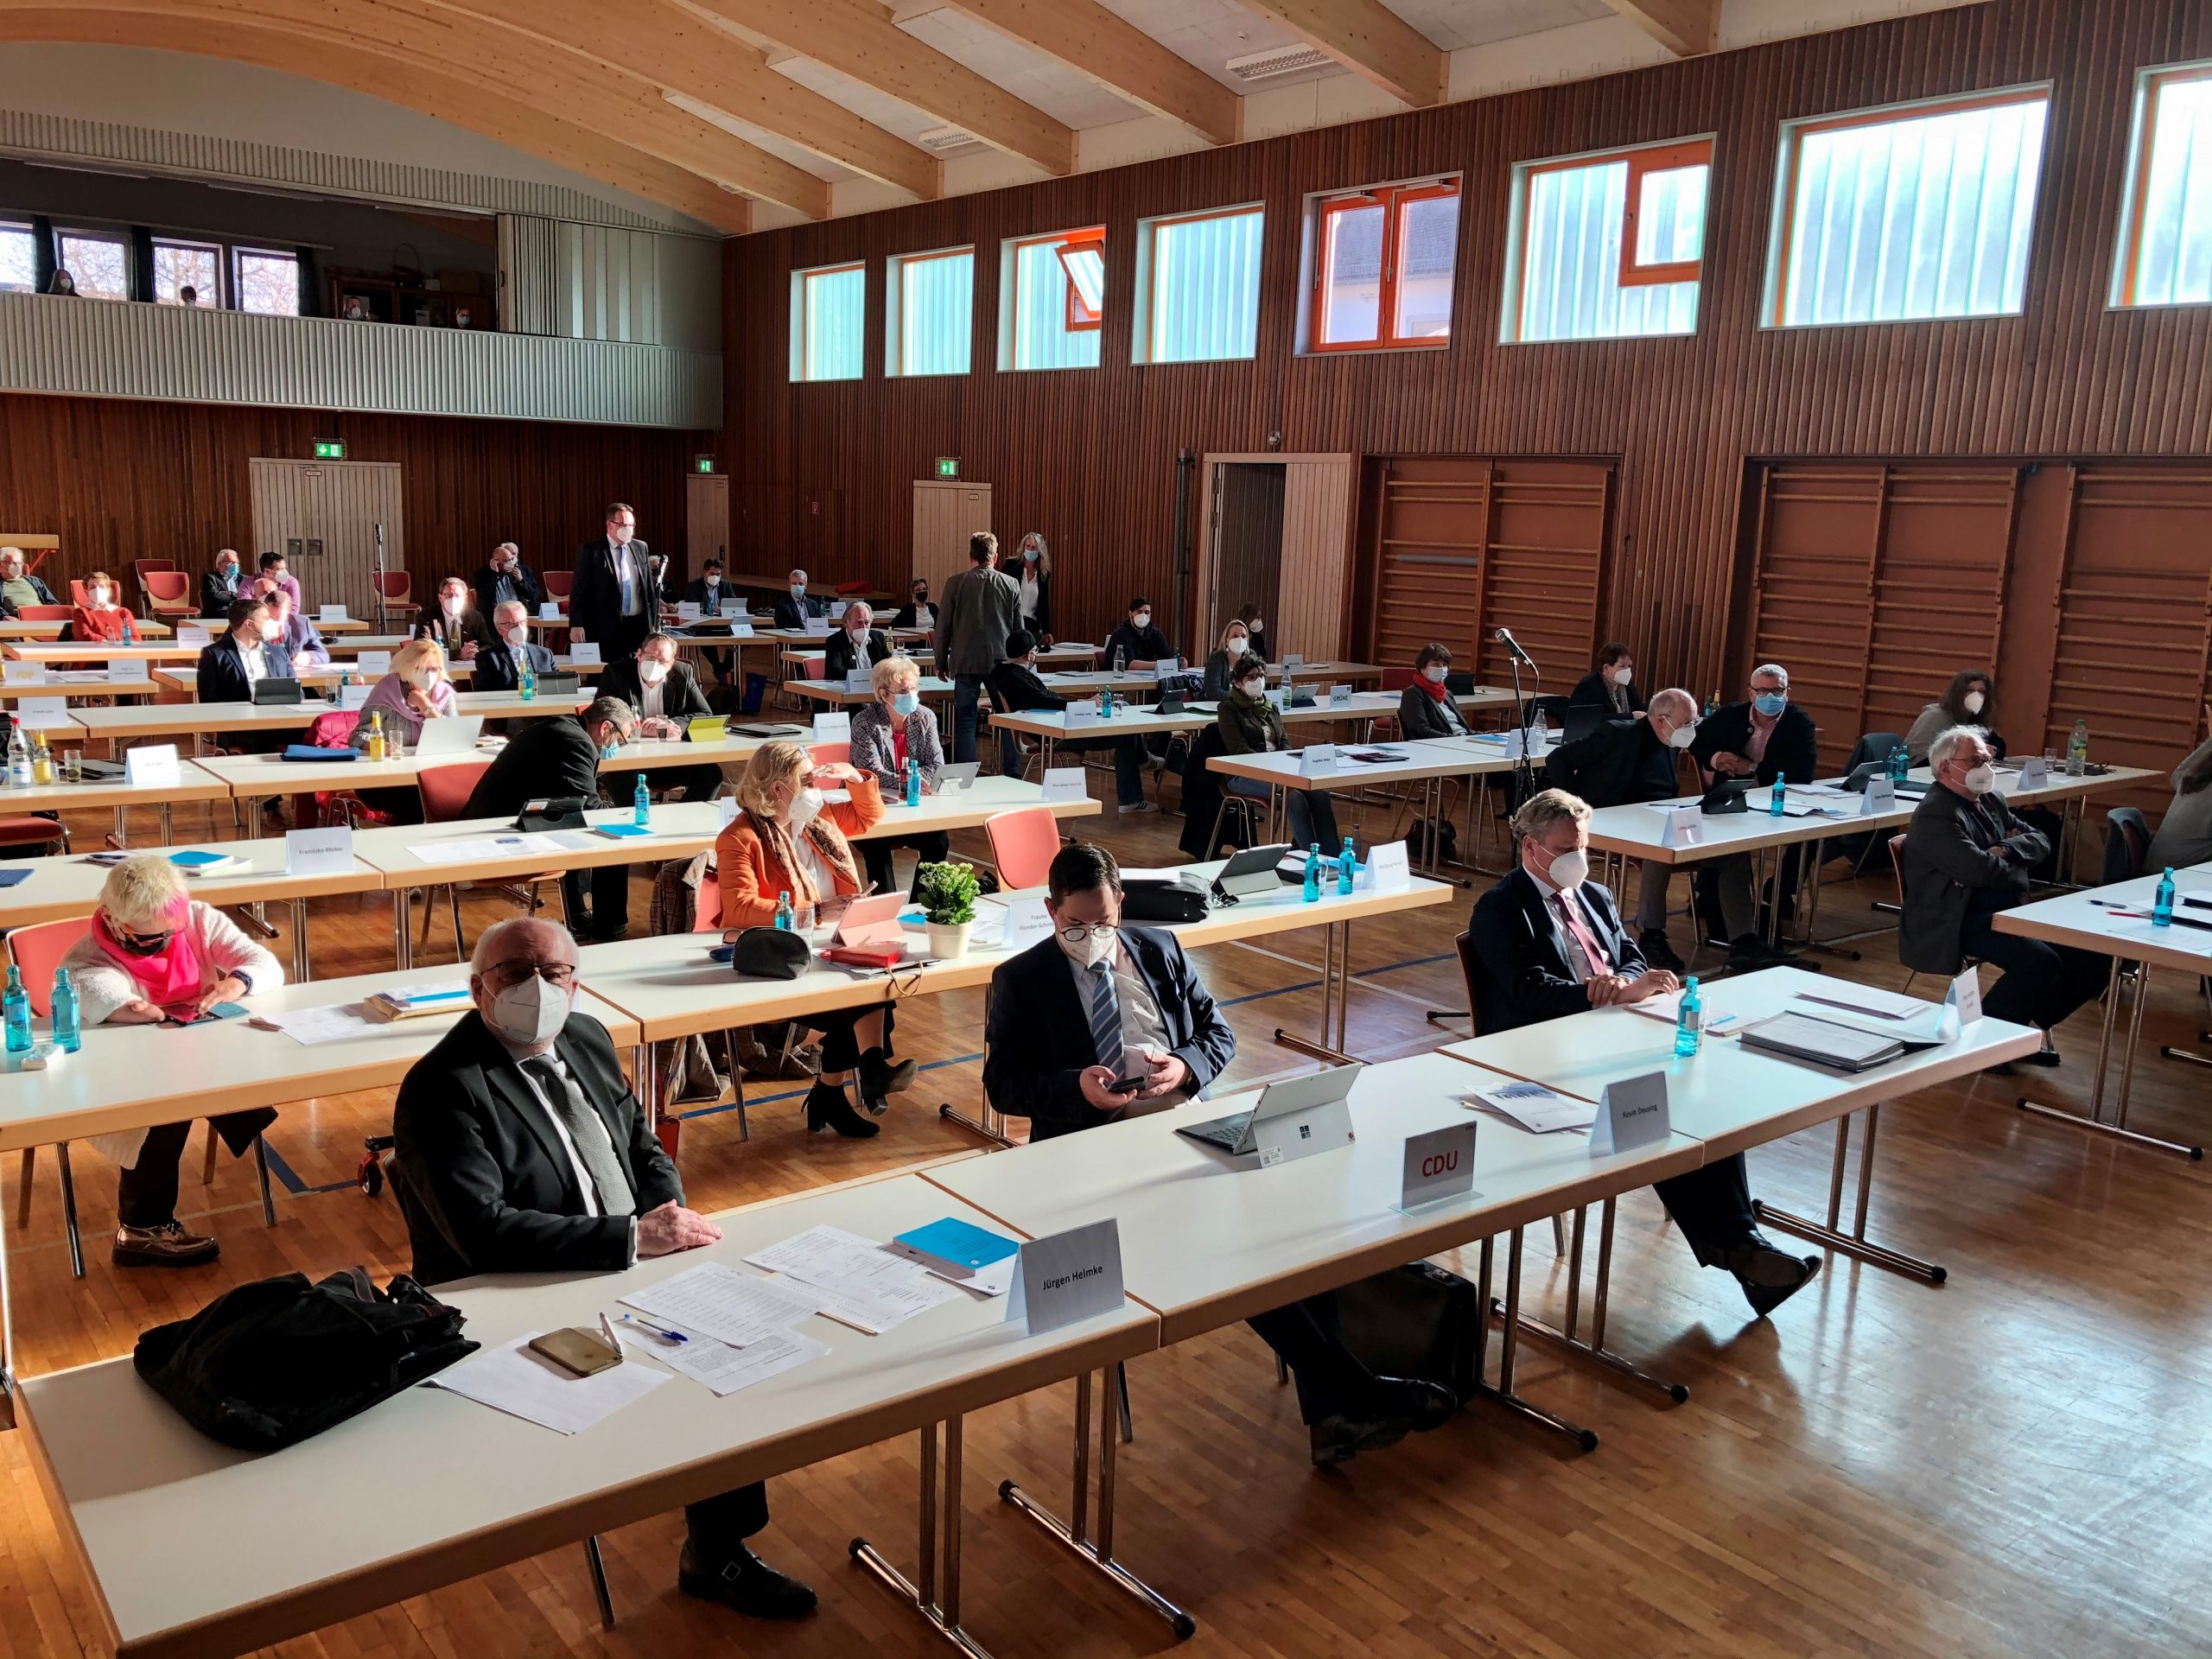 Foto (Oranienstadt Dillenburg): Die Stadtverordnetenversammlung bei der konstituierenden Sitzung am 22. April in der Gemeinschaftshalle Niederscheld